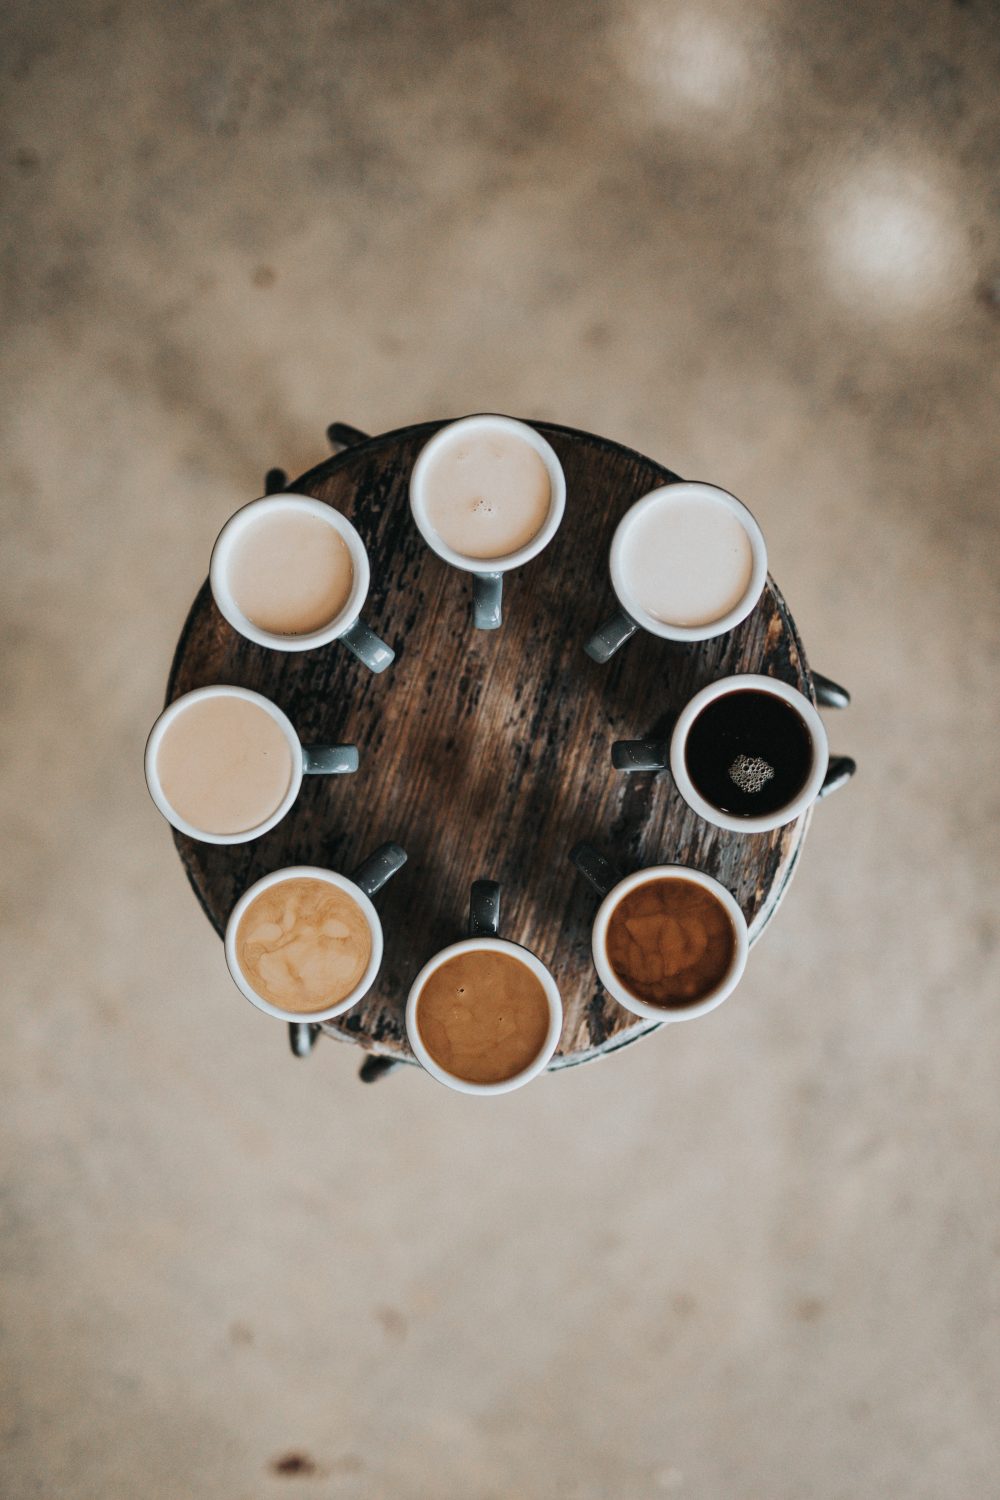 Tazas con distintos cafés en círculo